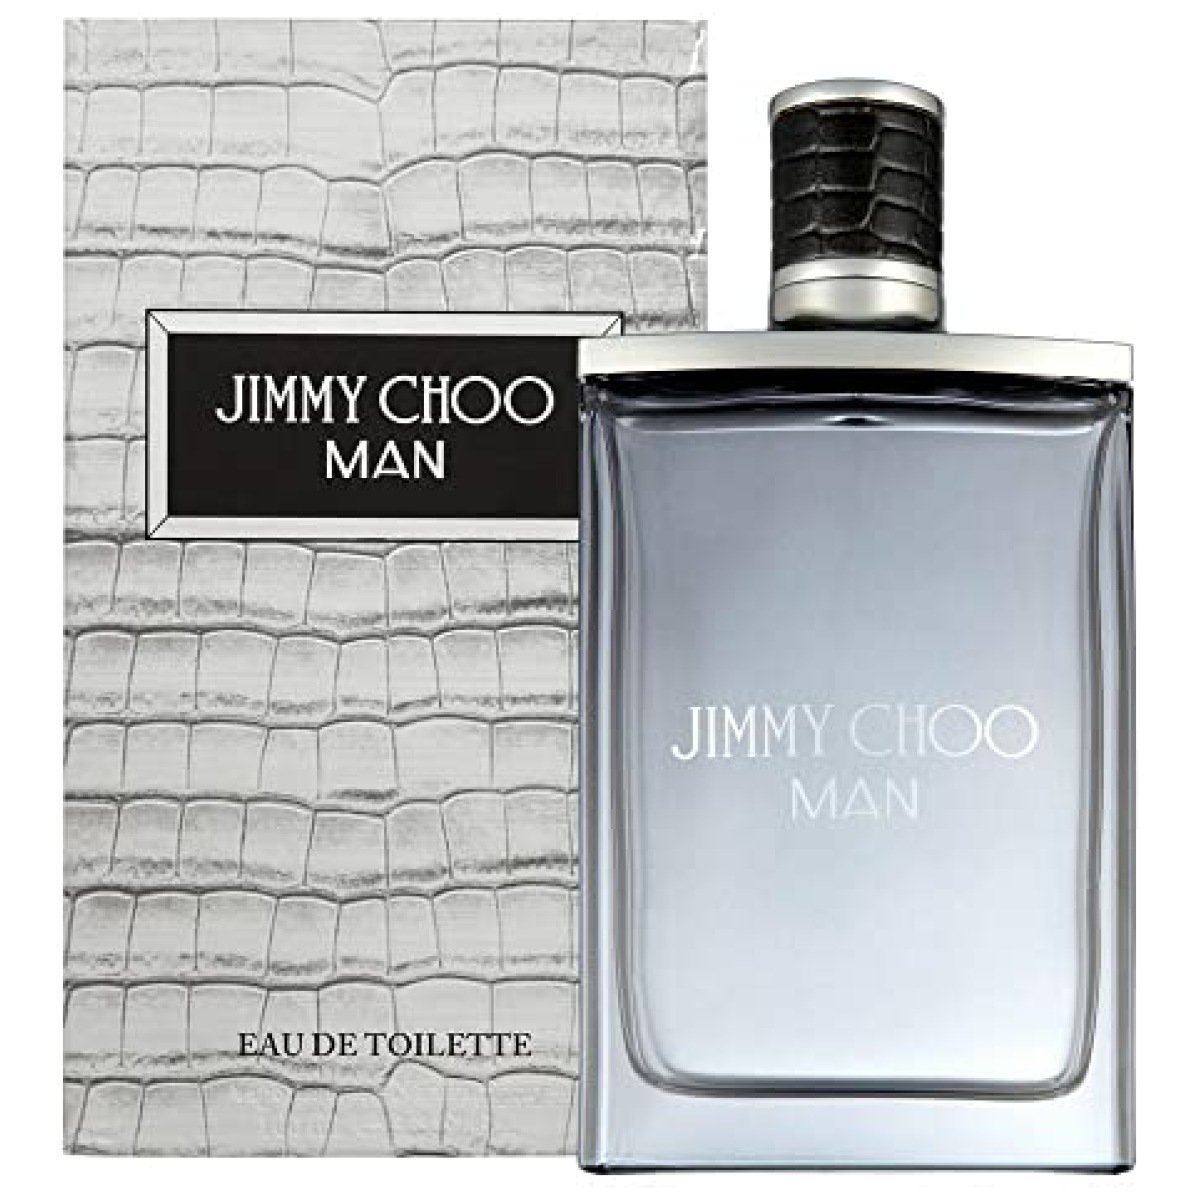 Jimmy Choo Man EDT Perfume For Men 4.5 ml